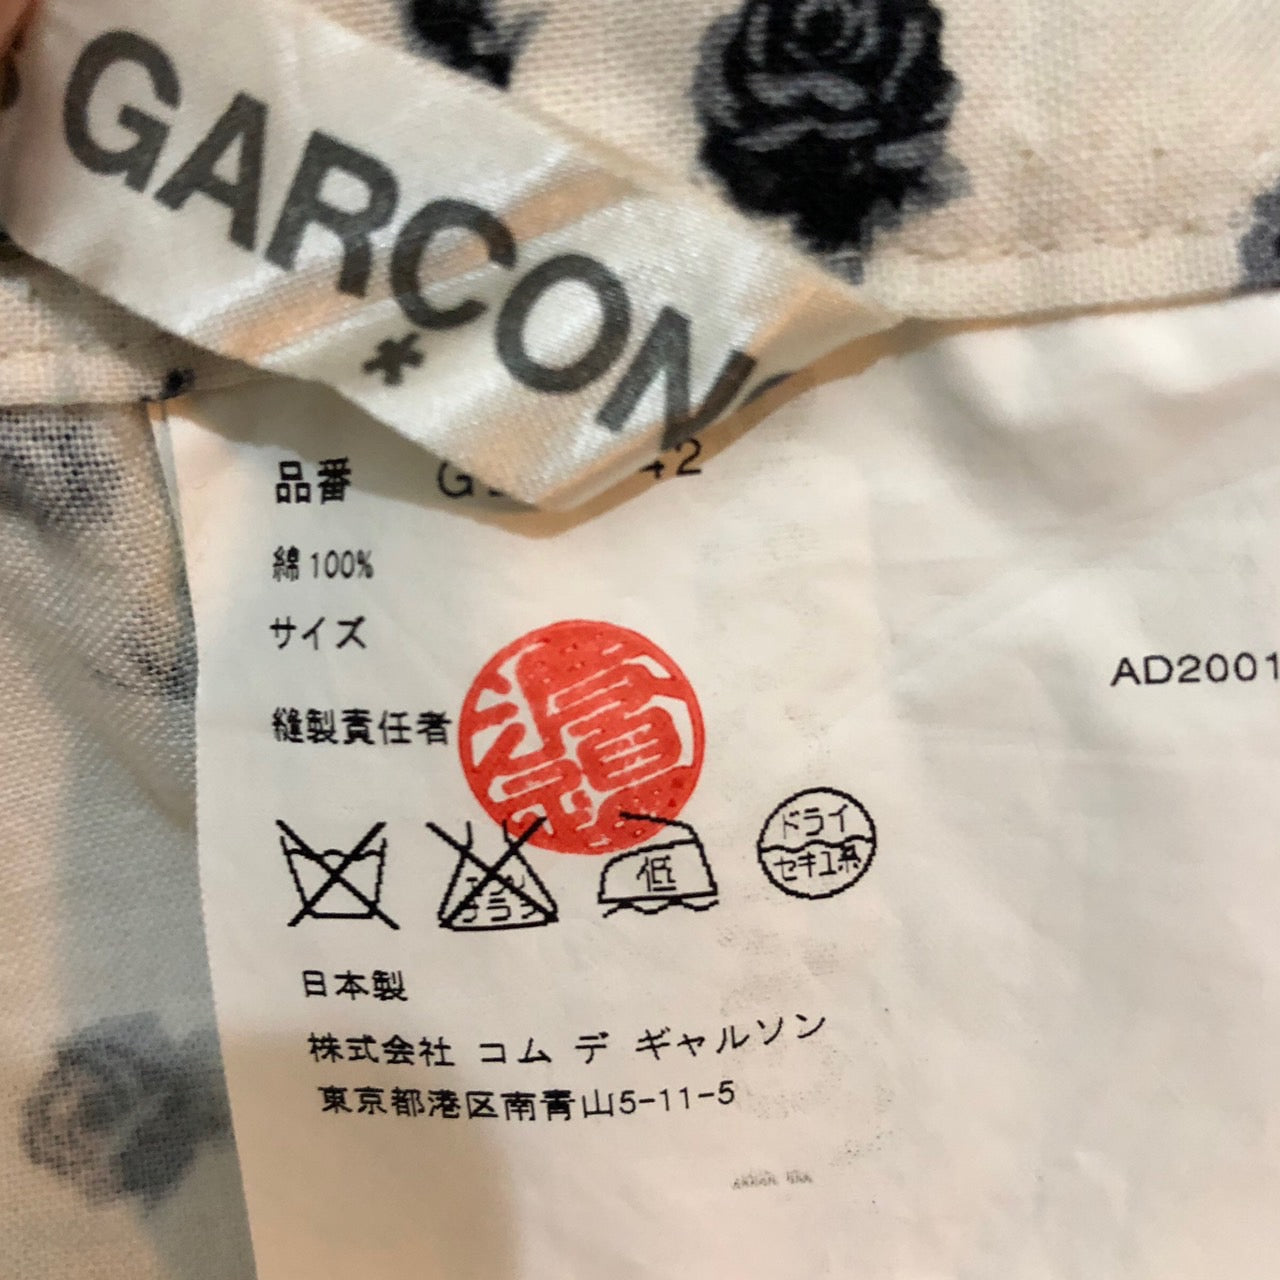 COMME des GARCONS(コムデギャルソン) 02SSフラワープリント巻きスカート/00S/稀少/花柄 GE-S042 SIZE FREE アイボリー×ブラック AD2001